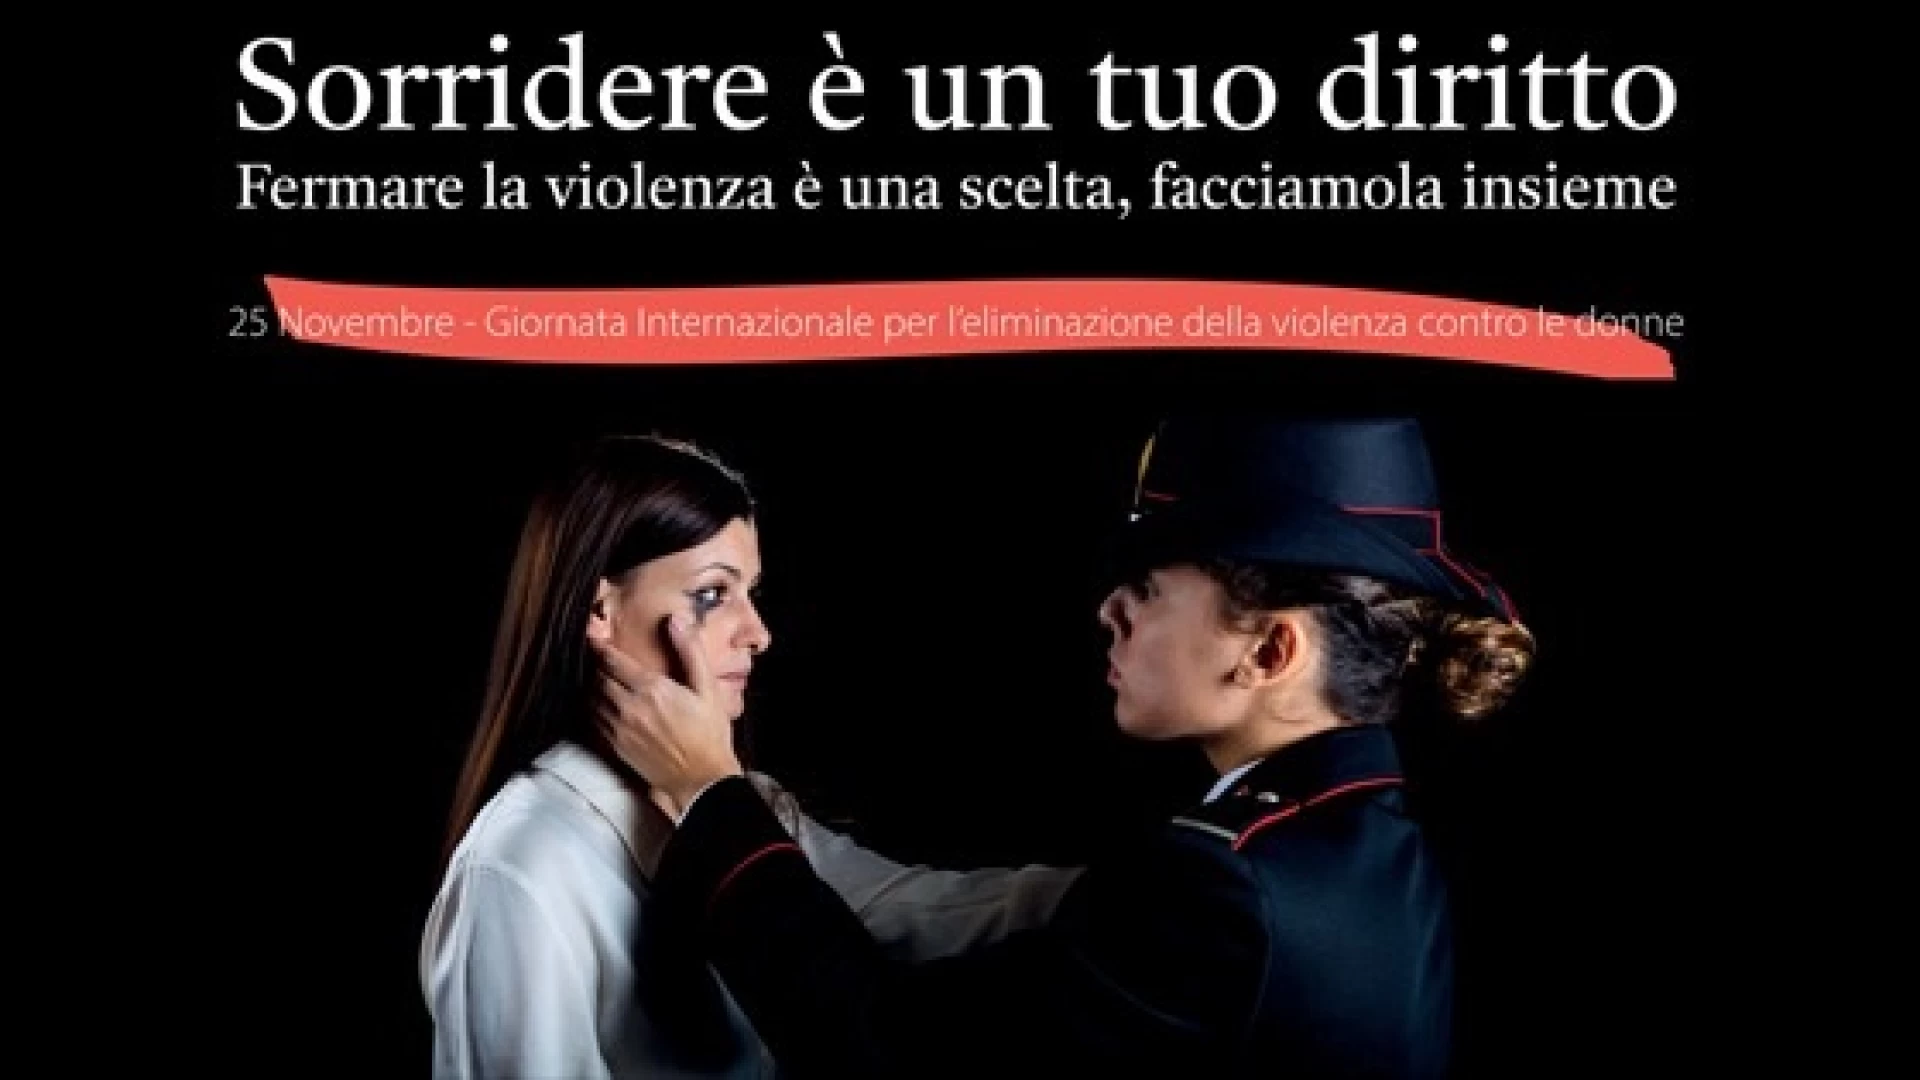 Carabinieri di Isernia  Violenza di genere, continua l'attività di contrasto dell'arma dei Carabinieri: 16 denunciati.